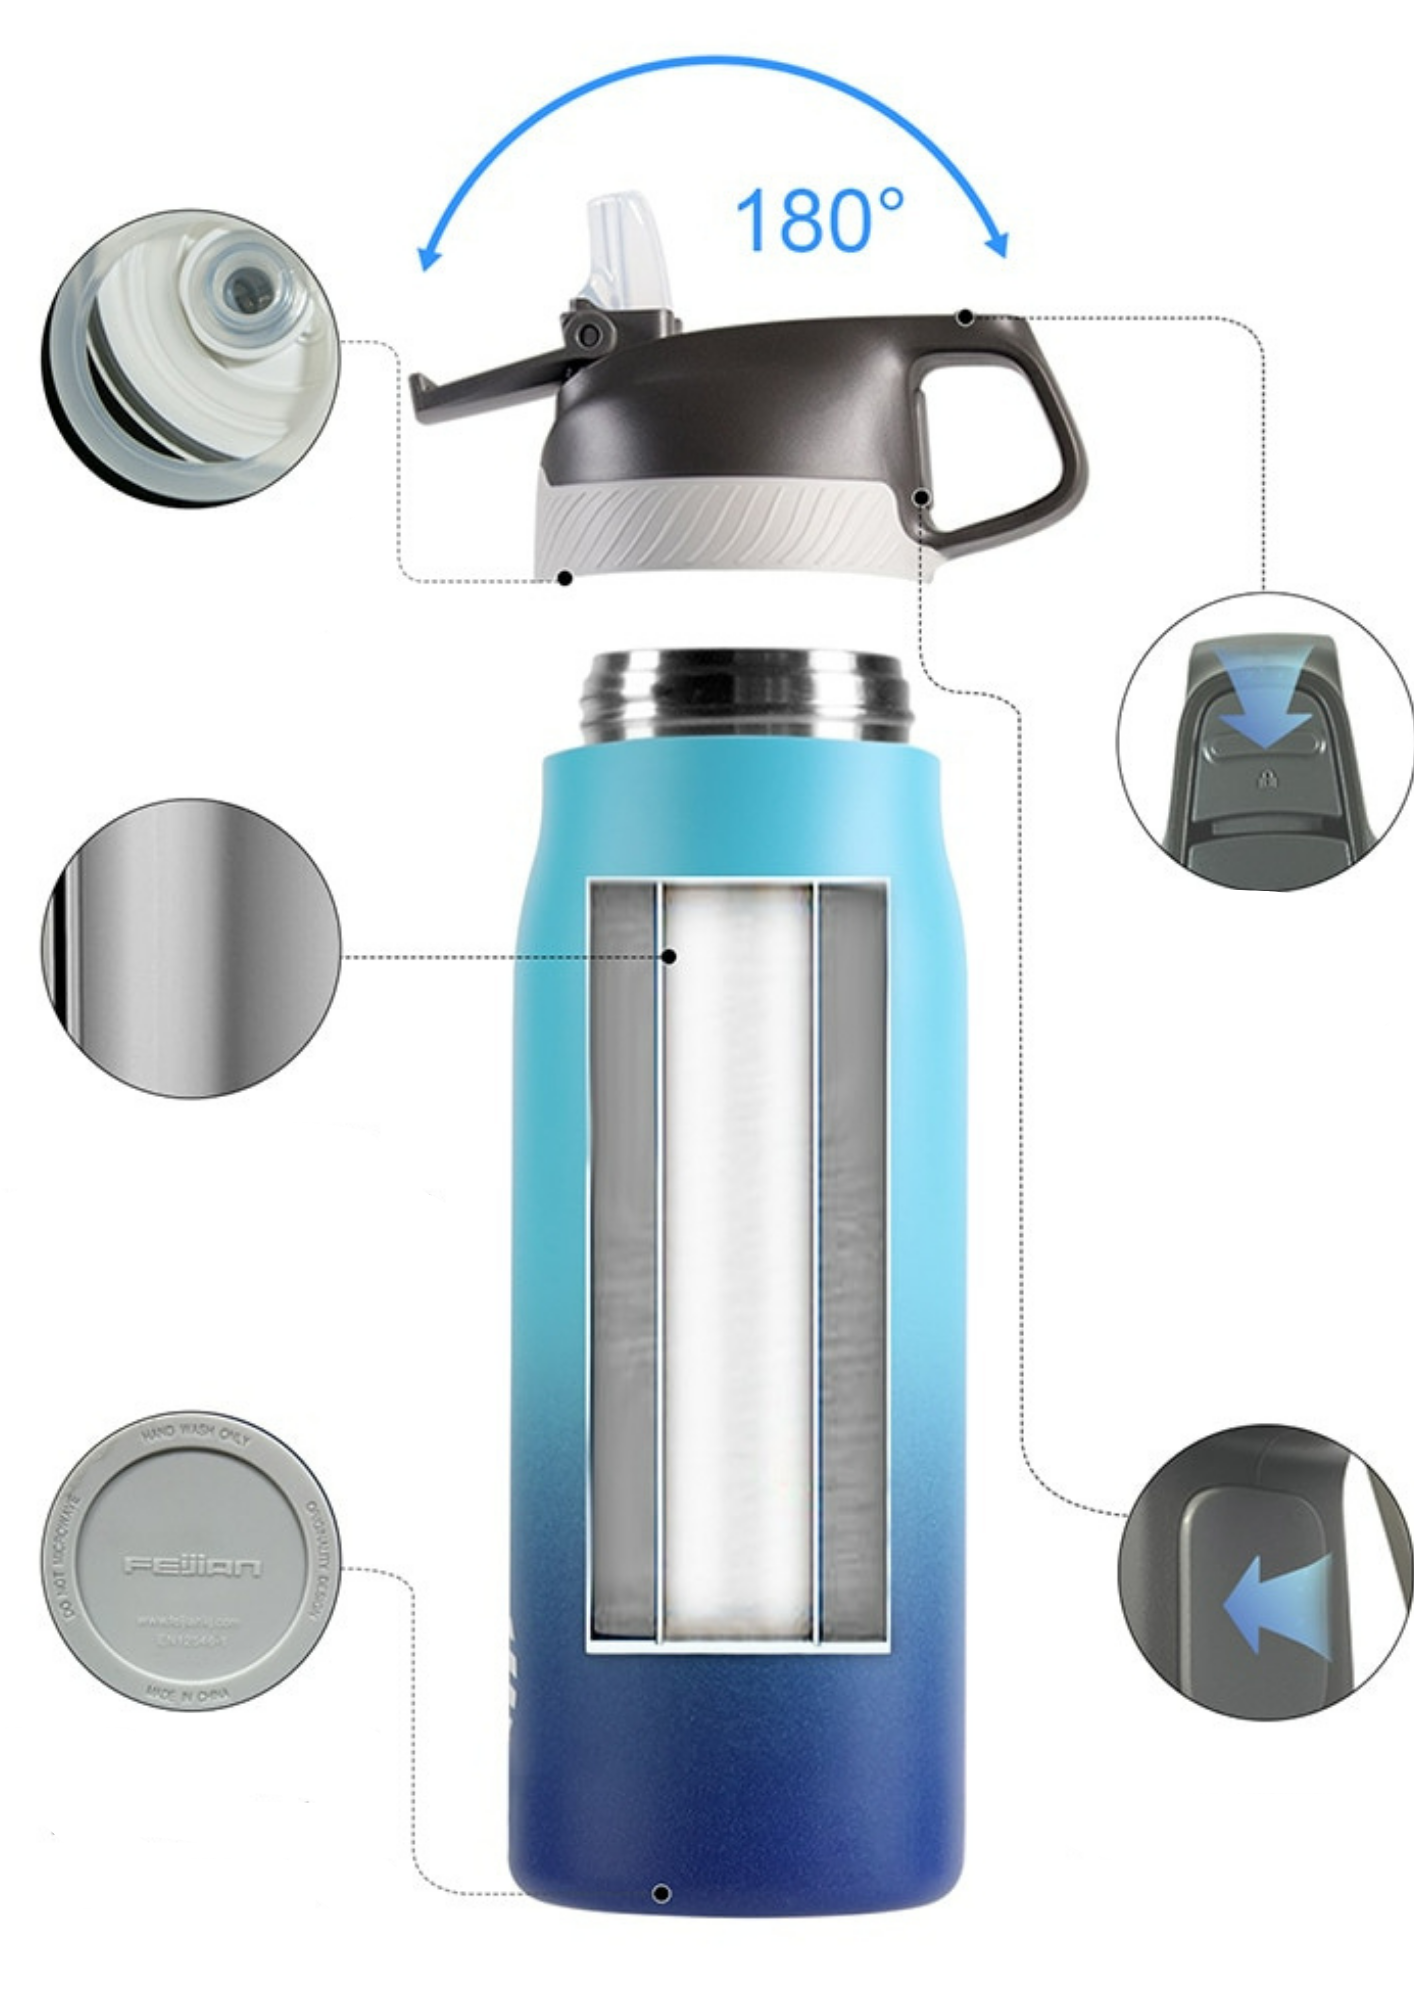 Das Bild zeigt eine Edelstahl-Thermosflasche mit einem blauen Farbverlauf und einer doppelwandigen Konstruktion. Es sind verschiedene Merkmale hervorgehoben: der 180°-oeffnende Deckel, ein Knopf zum Ausgießen, die Doppelwand-Isolierung und der Boden der Flasche. Diese Aspekte werden durch Nahaufnahmen und Pfeile veranschaulicht.